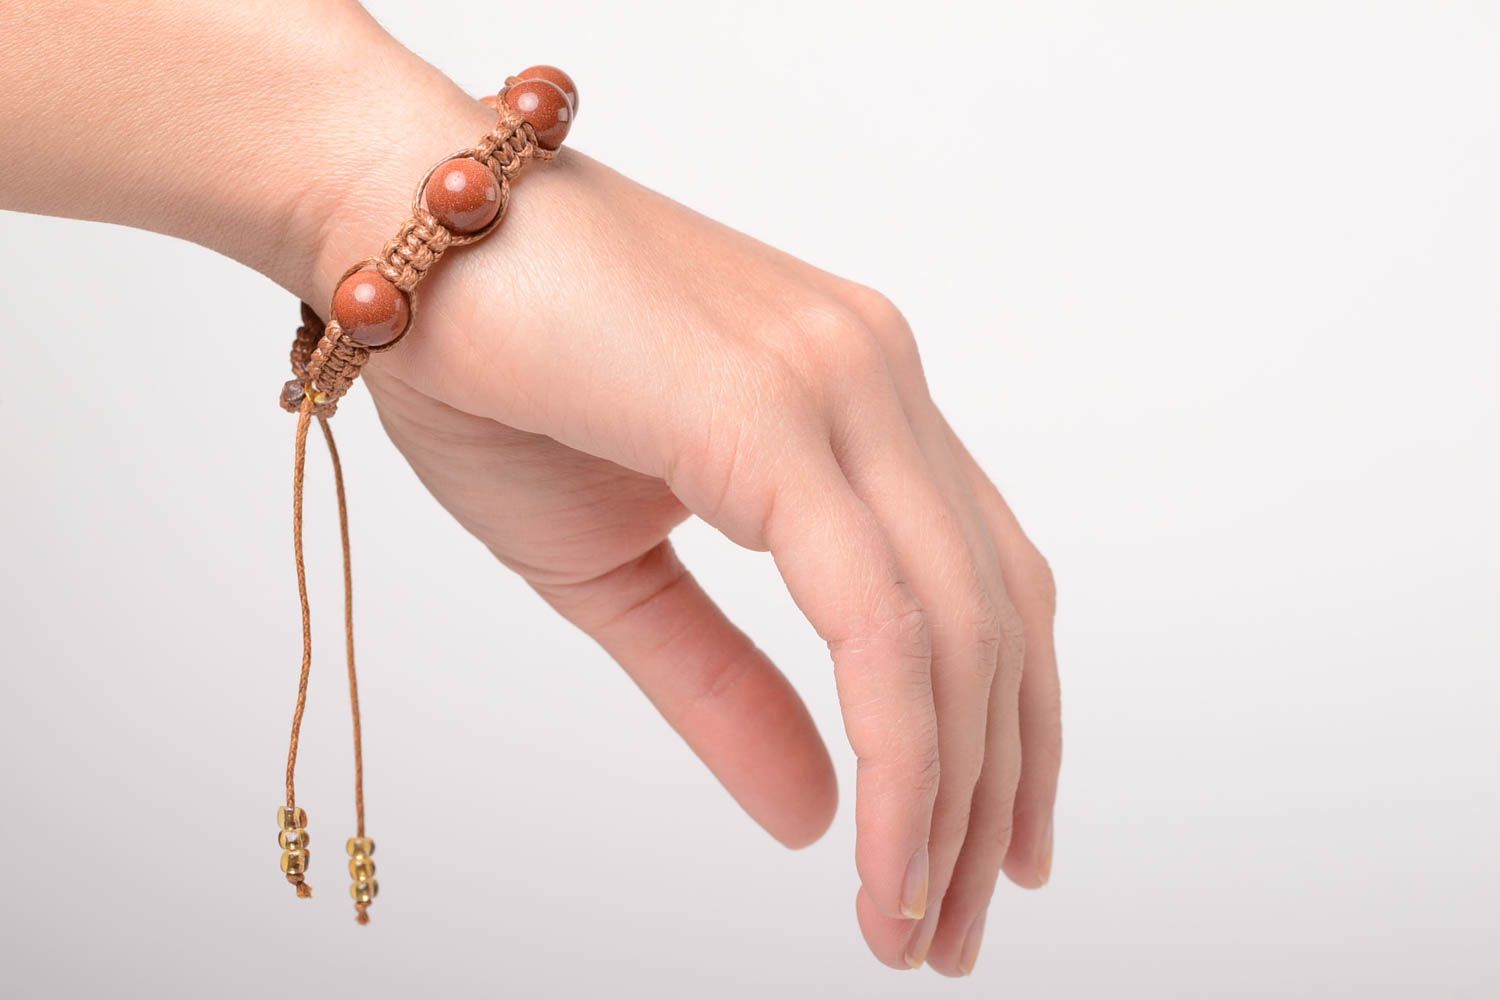 Handmade friendship bracelet bead bracelet wrist bracelet gifts for women photo 3